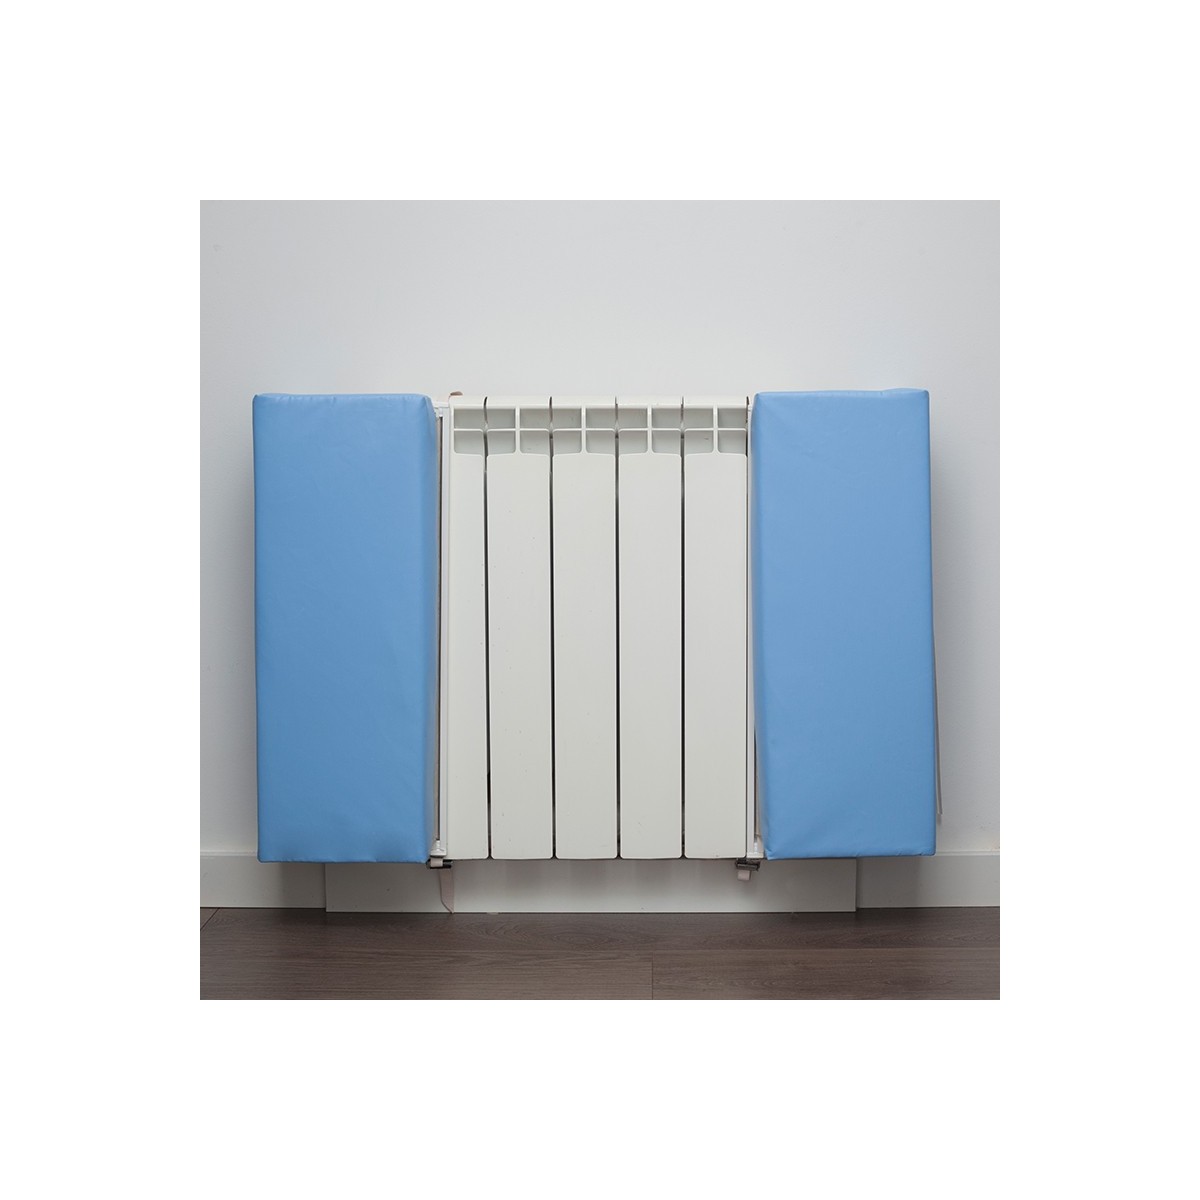 Protections de radiateur Les protections de radiateurs sont des protections fabriquées en mousse rembourré semi-rigide pour évit